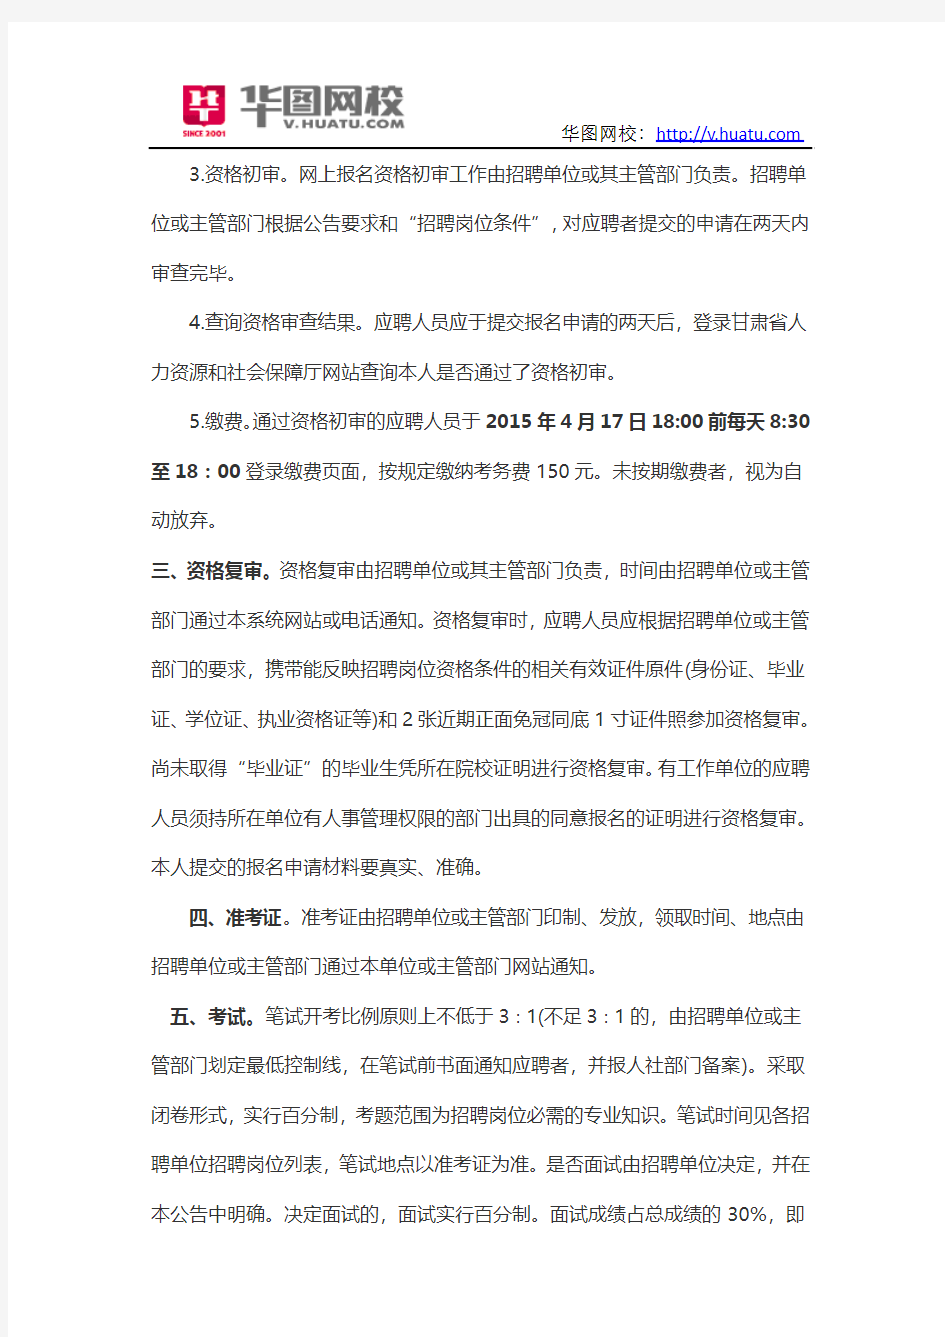 2015年甘肃省直事业单位报名信息